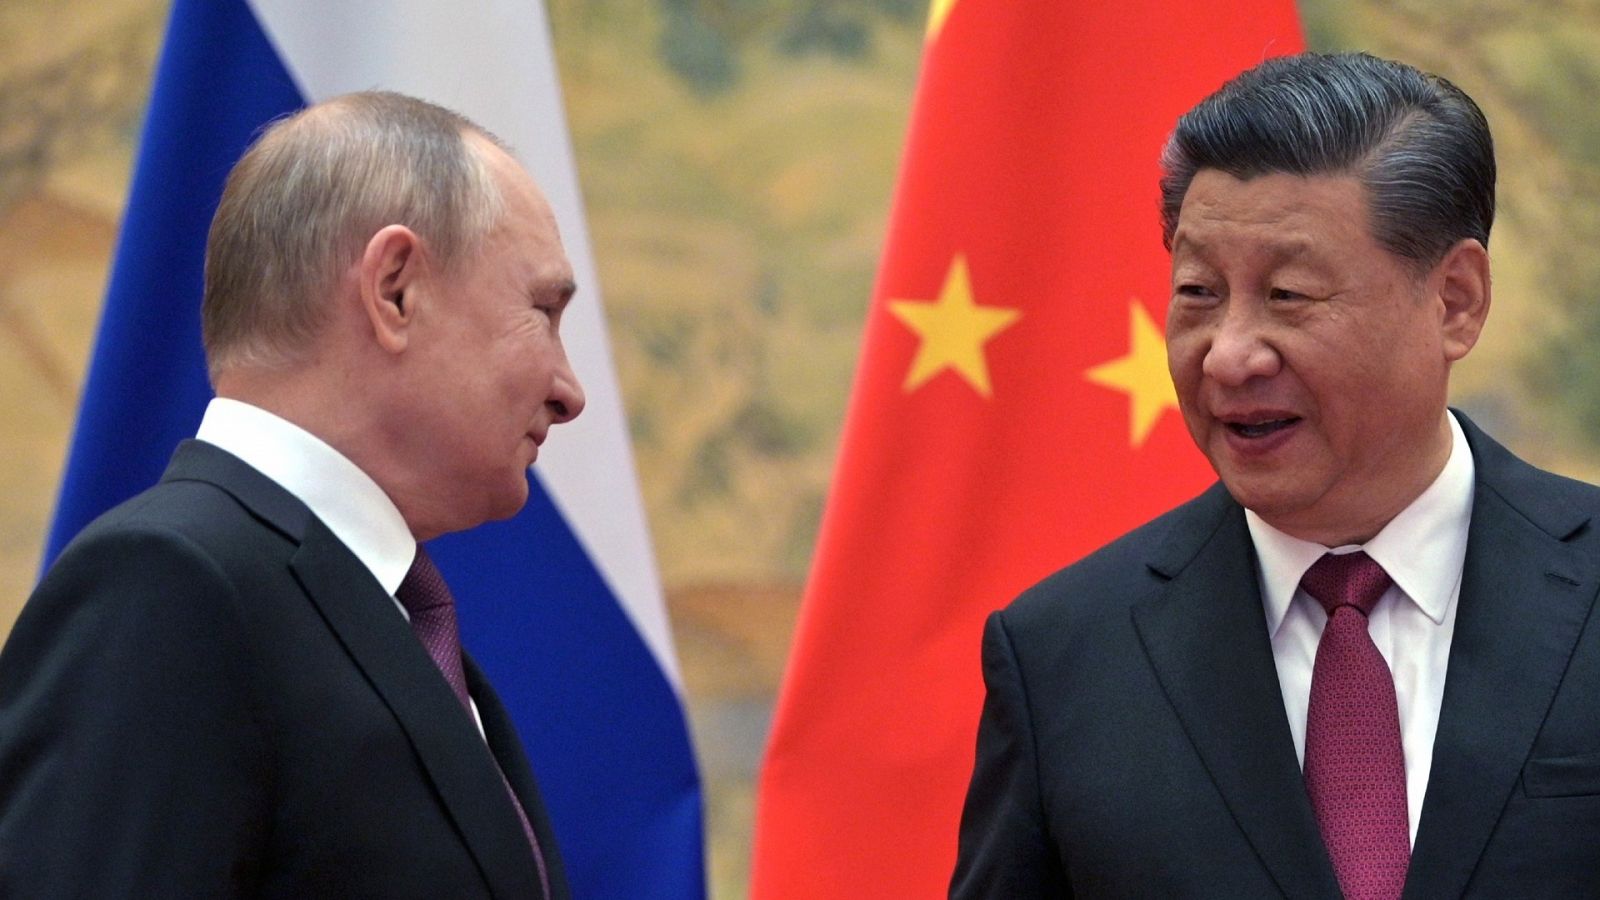 24 horas - China y Rusia declaran su oposición conjunta a la expansión de la OTAN - Escuchar ahora 